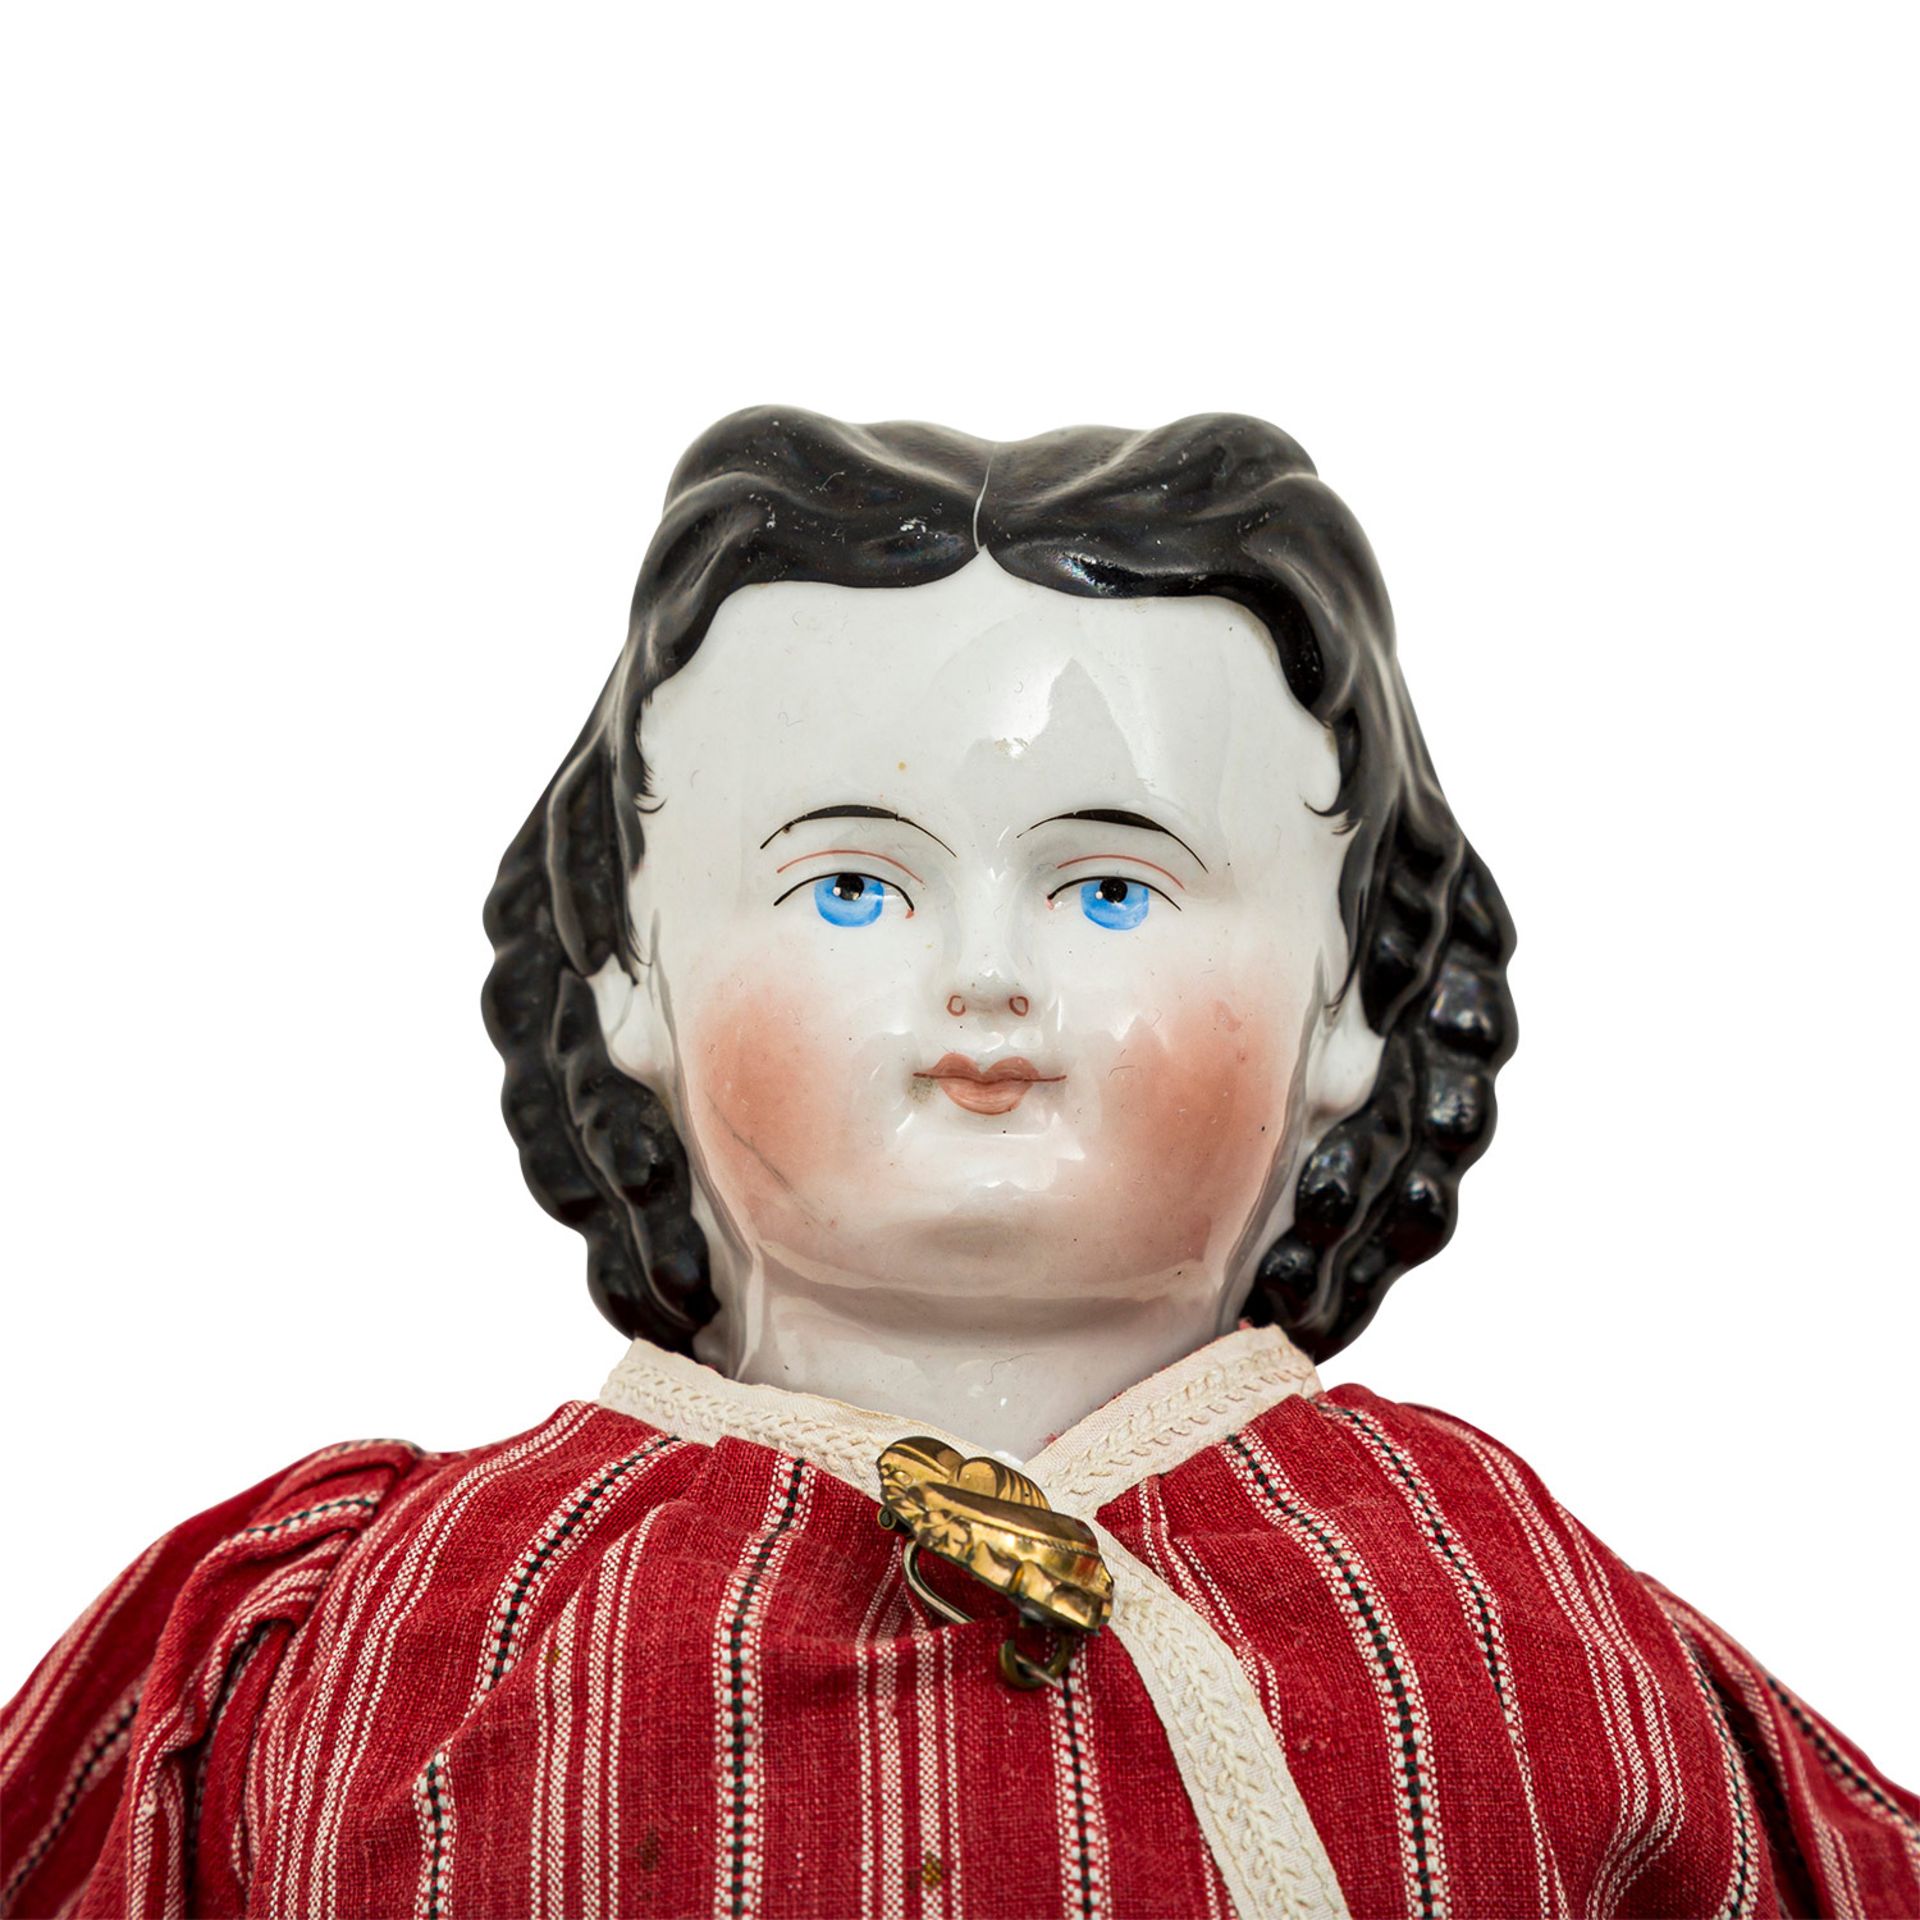 CHINA-HEAD Puppe, wohl 19. Jh.Brustblattkopf-Puppe aus glasiertem Porzellan, blaue, gemalte Augen, - Bild 4 aus 4